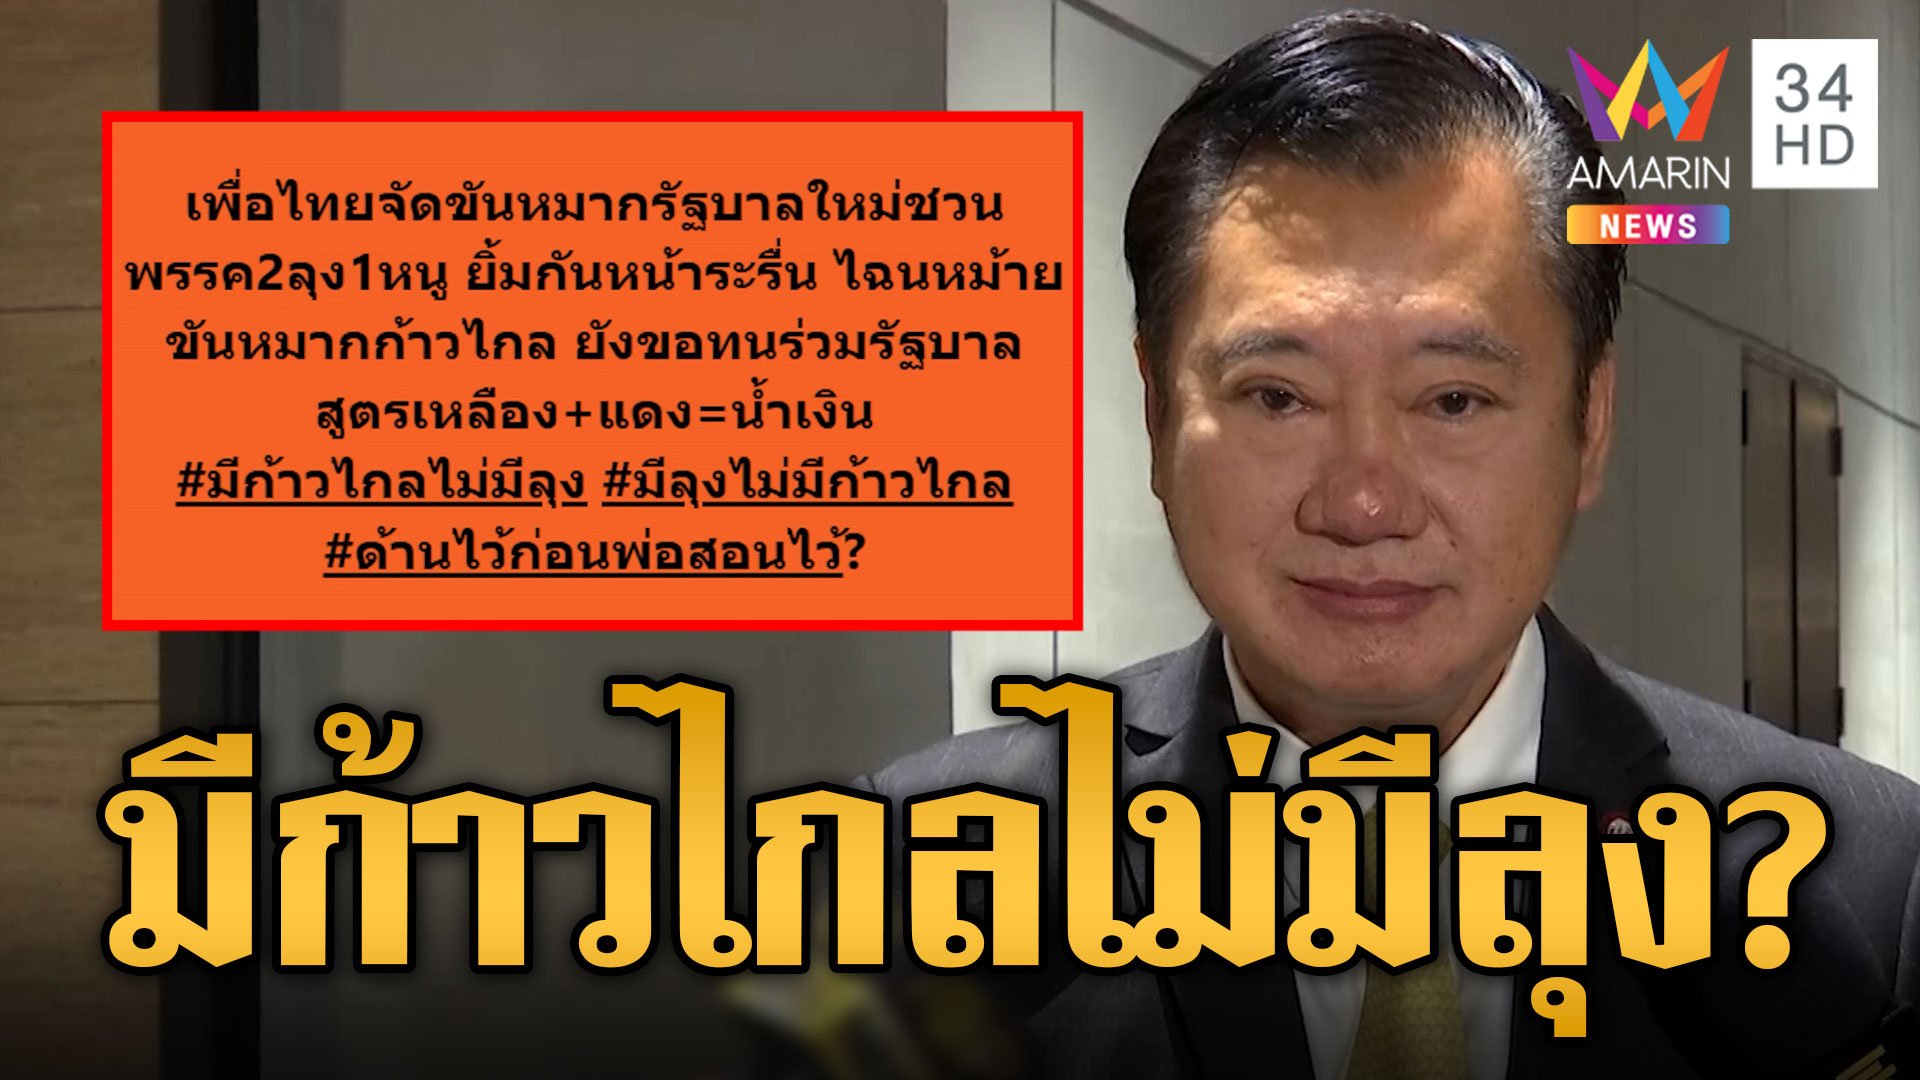 สว.สมชาย แนะเพื่อไทยเลื่อนโหวตนายกฯ ไม่อยากเห็นหม้ายขันหมากซ้ำก้าวไกล | ข่าวอรุณอมรินทร์ | 24 ก.ค. 66 | AMARIN TVHD34